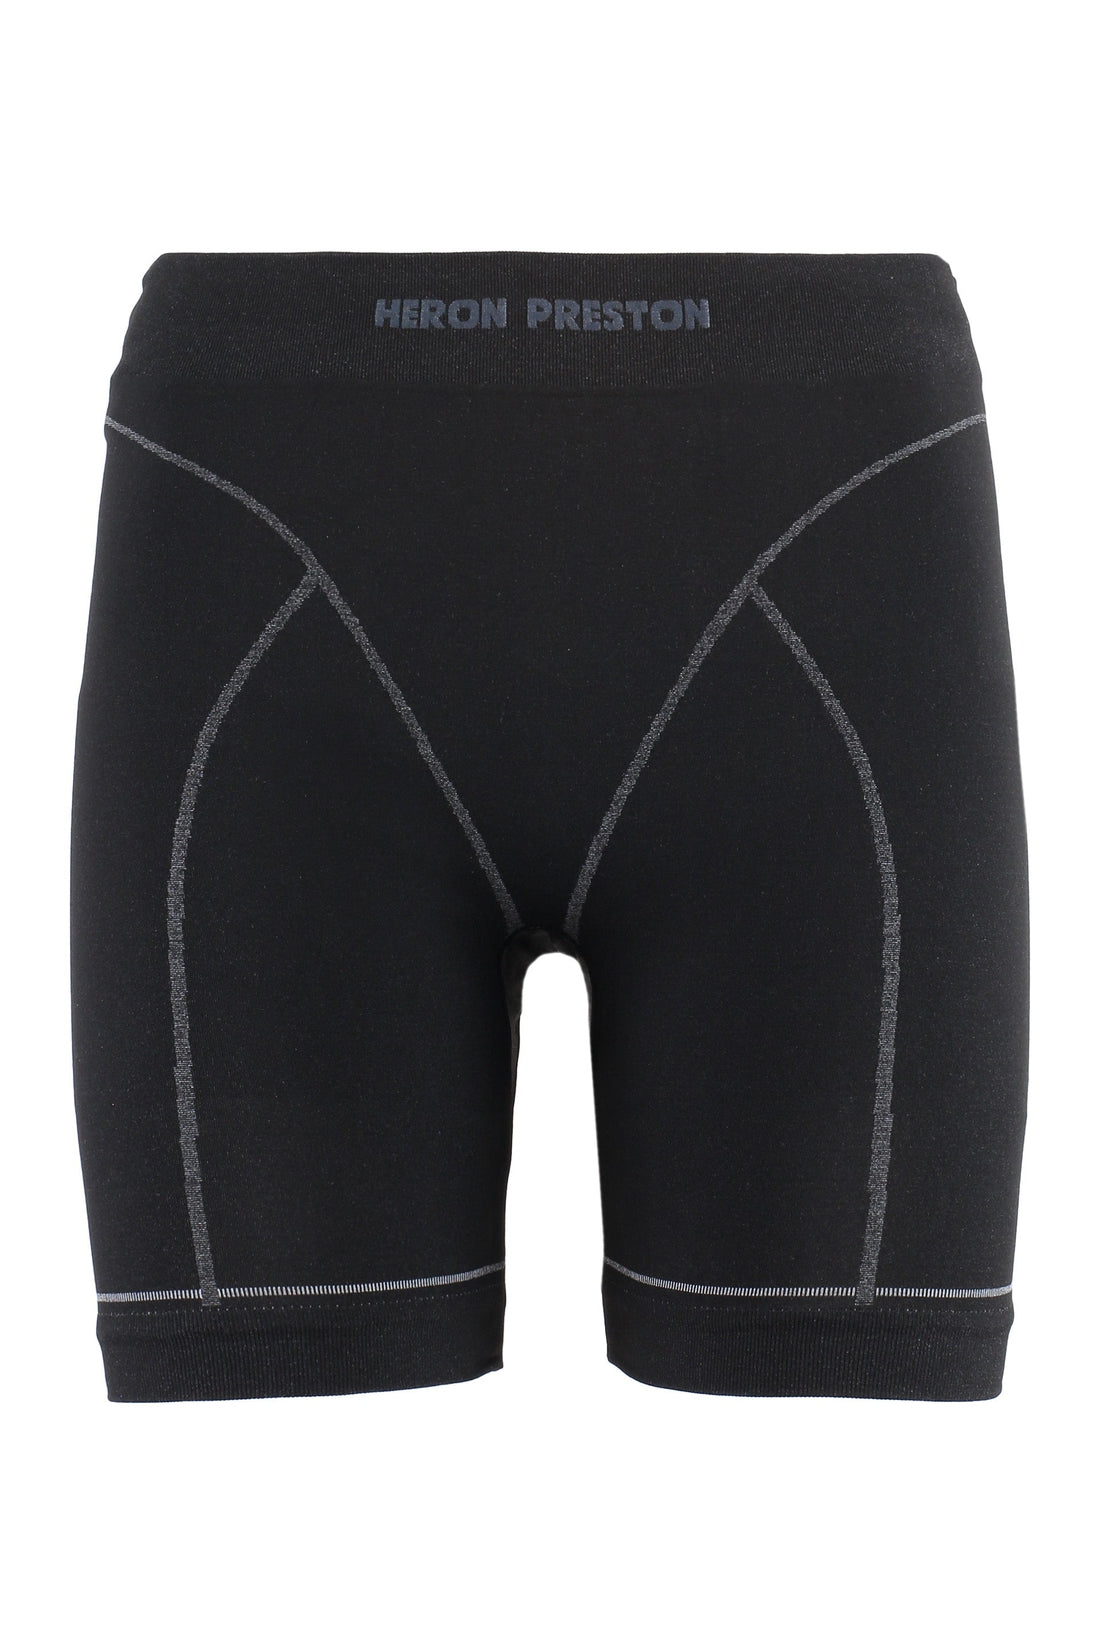 Heron Preston-OUTLET-SALE-Logo detail active shorts-ARCHIVIST